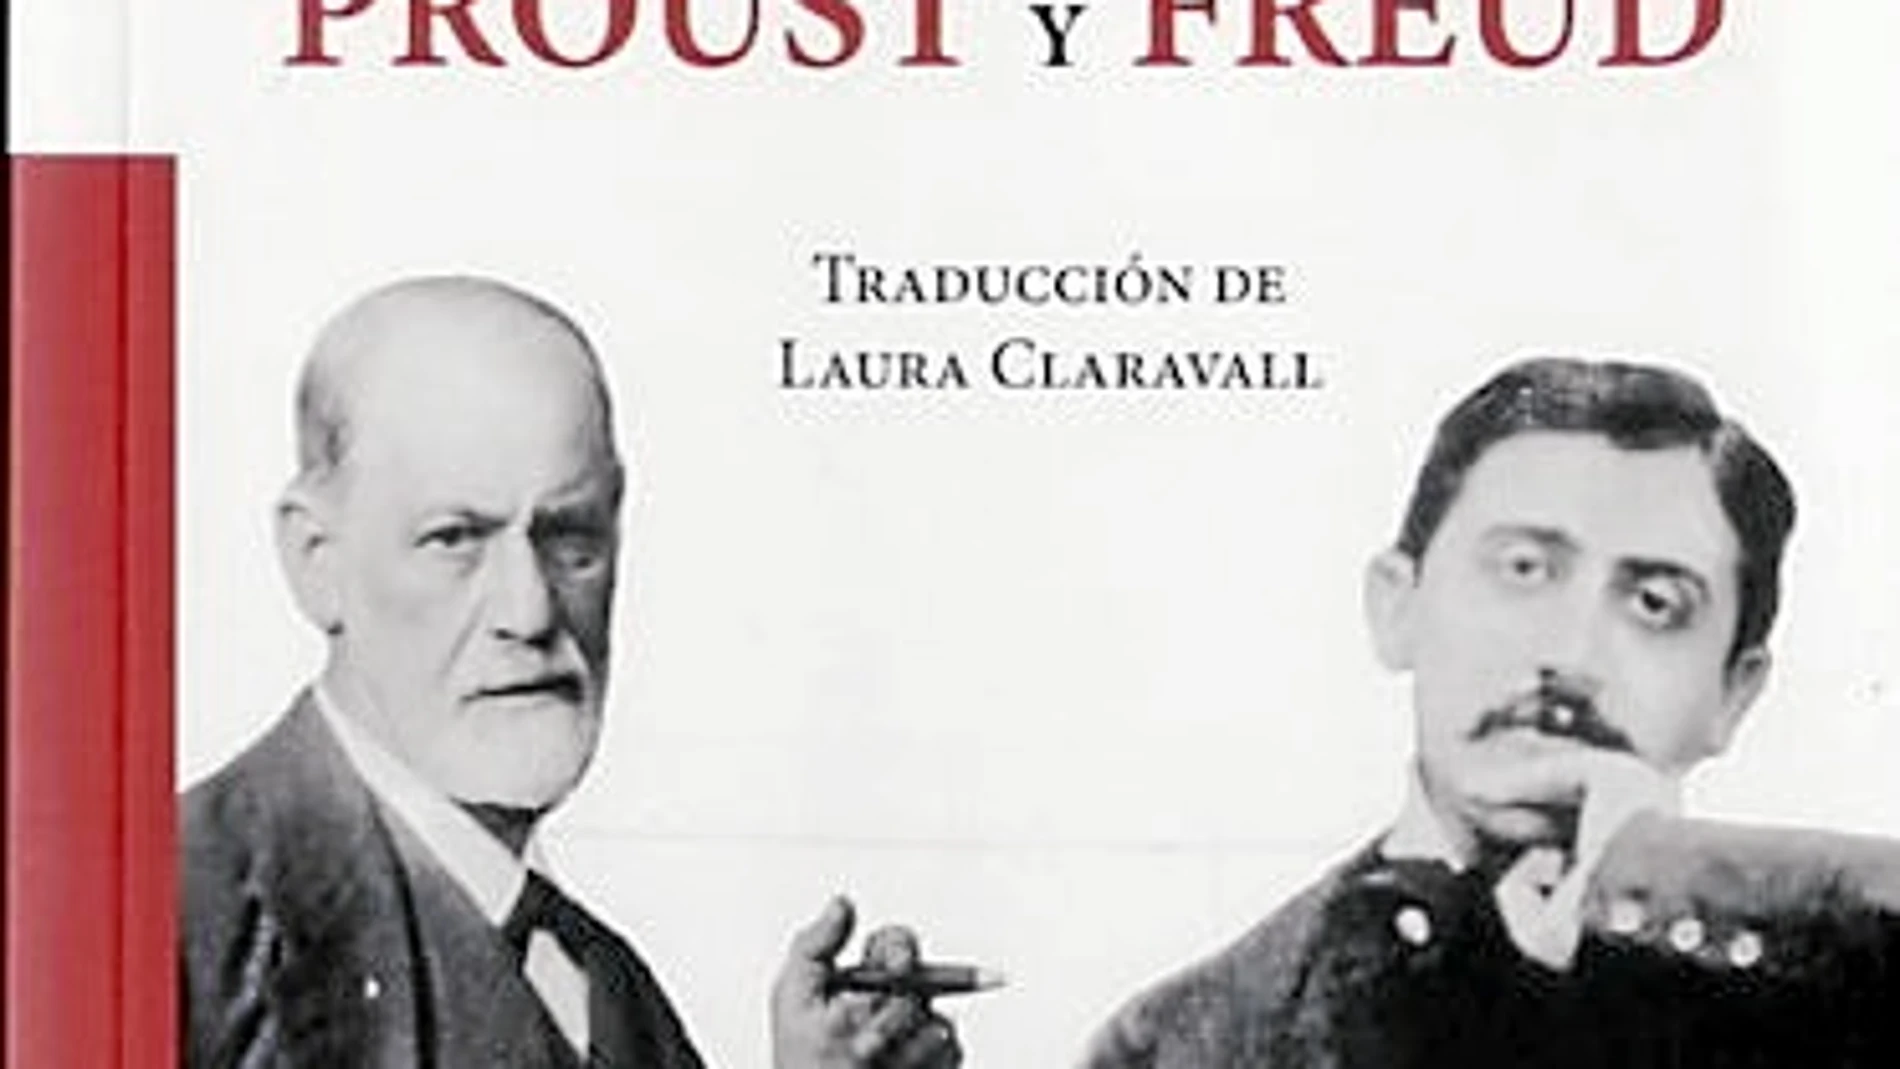 Proust y Freud, un diván para dos